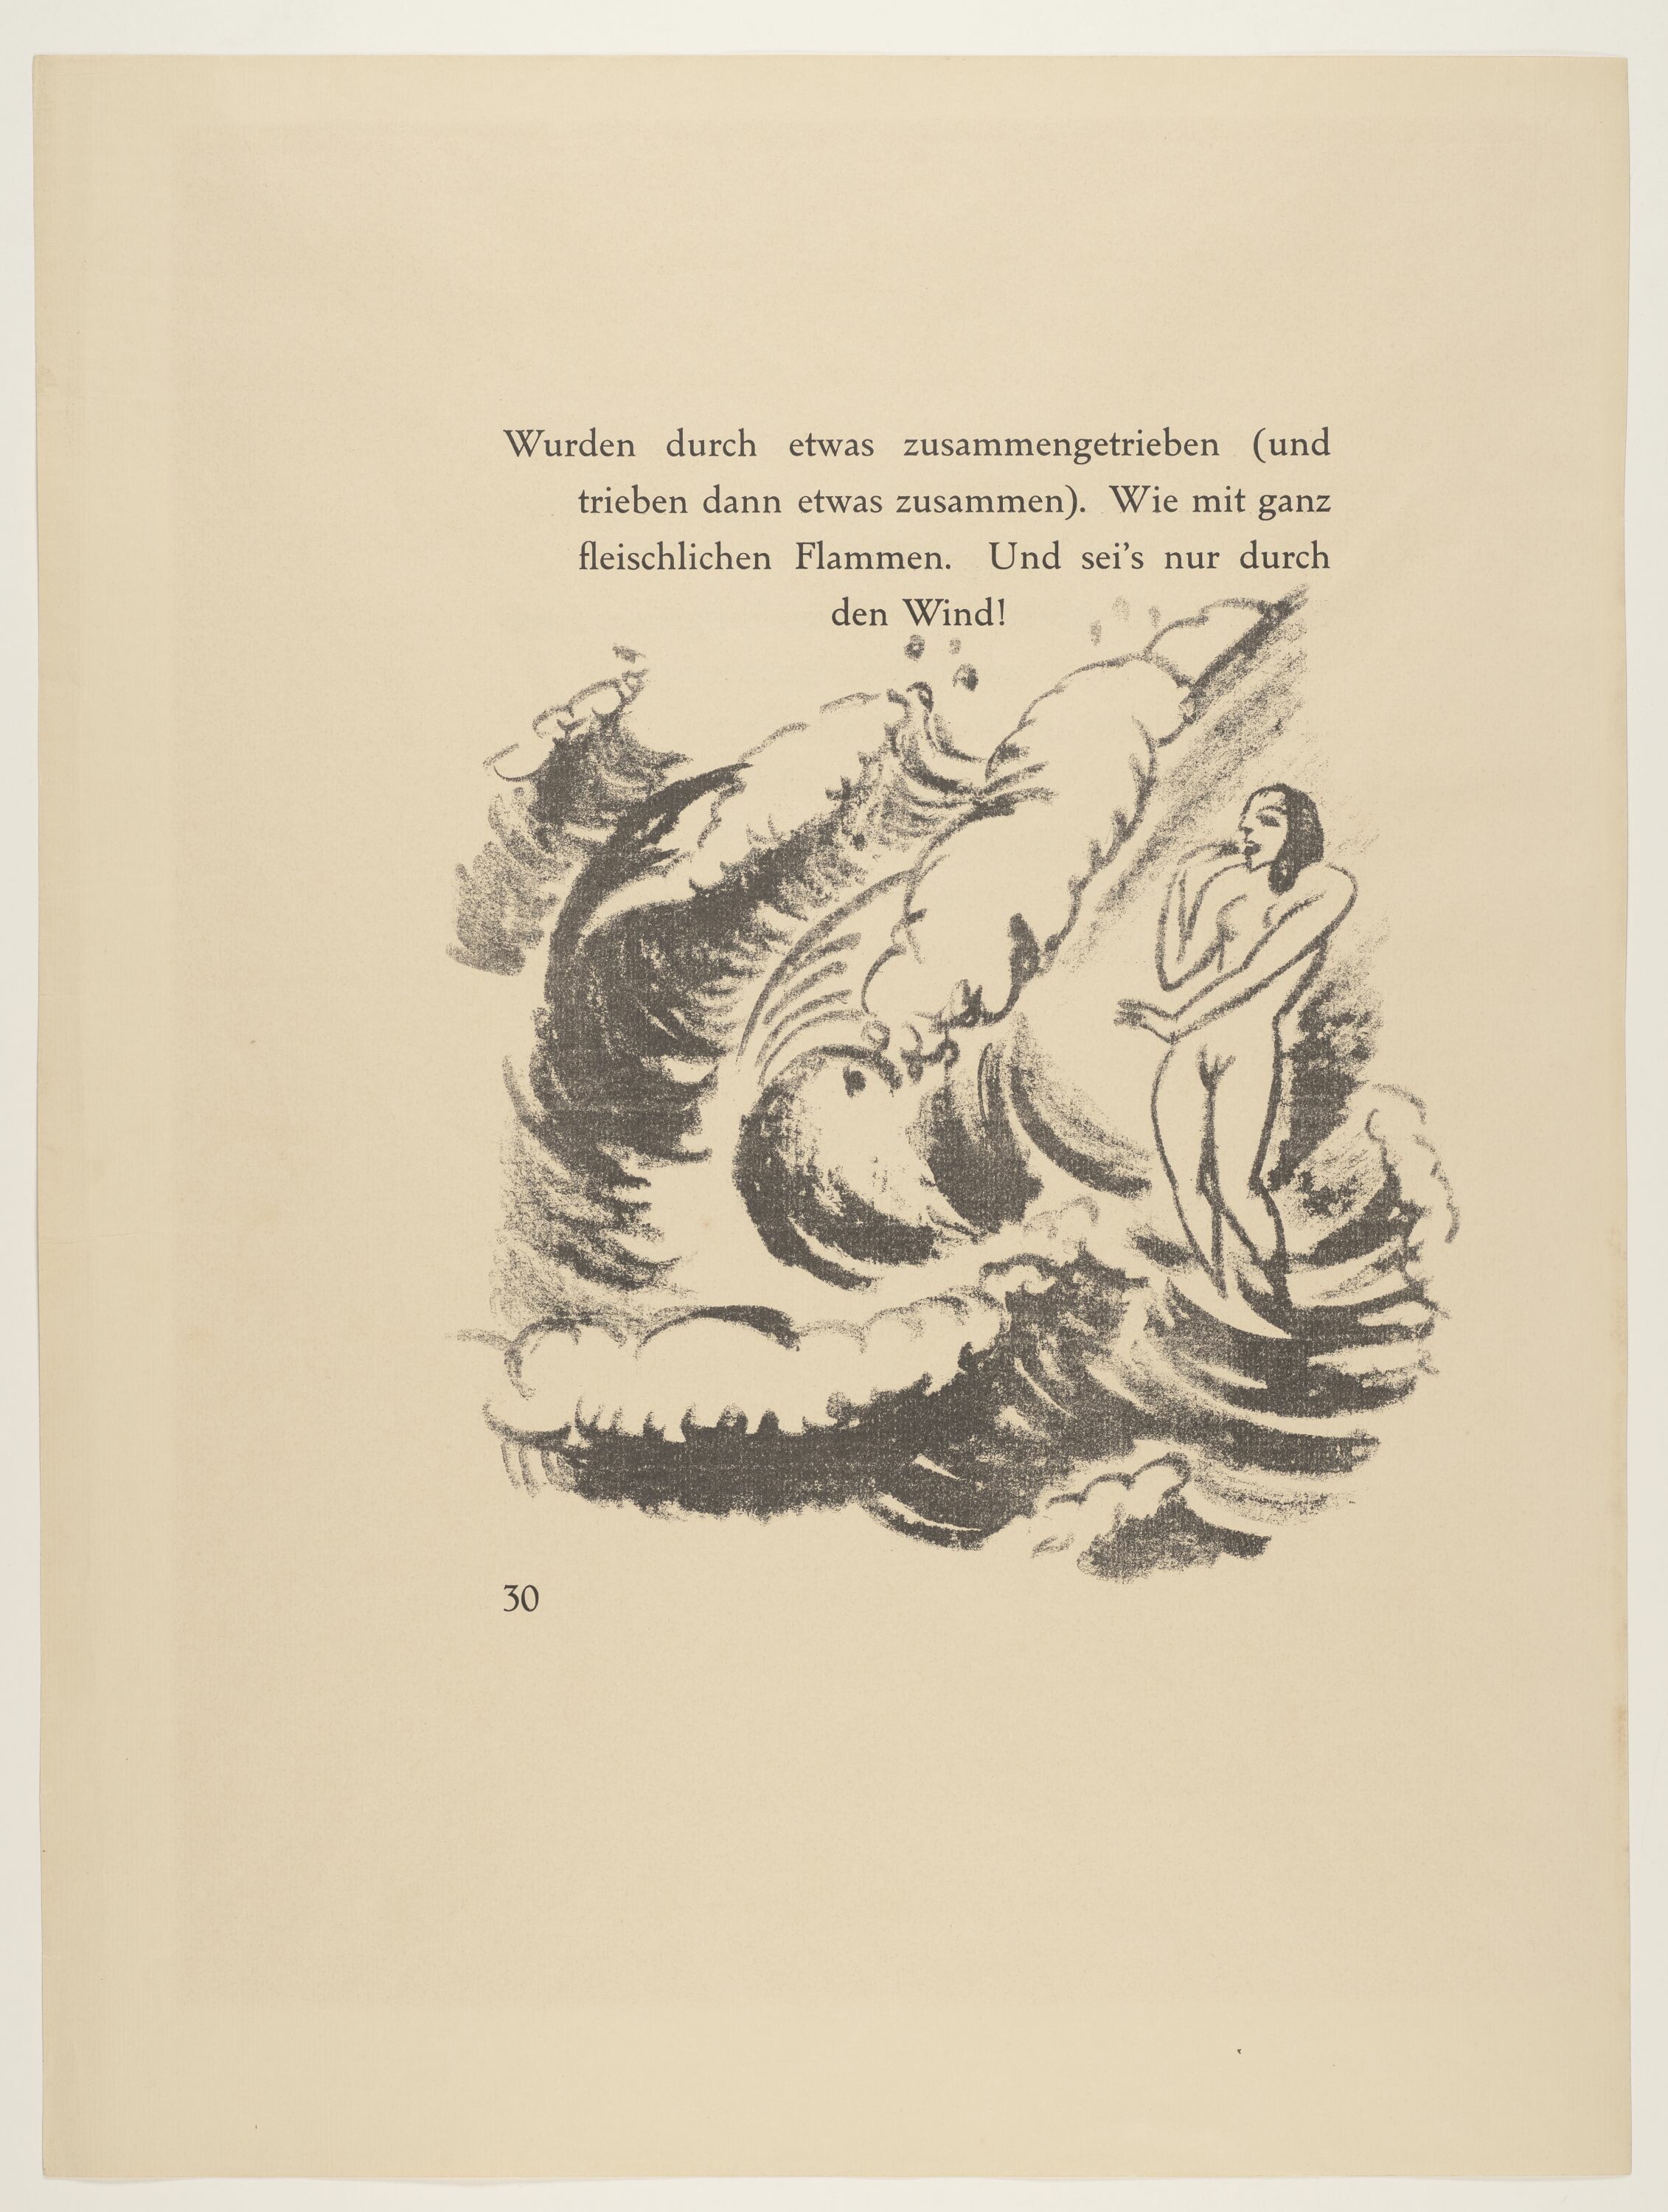 In den Wellen Badende, aus: Heinrich Lautensack: Paraphrasen zur Samländischen Ode, 21 Lithografien, Seite 30 (© Pechstein - Hamburg / Tökendorf, 2021 | VG Bild-Kunst, Bonn 2021 RR-F)